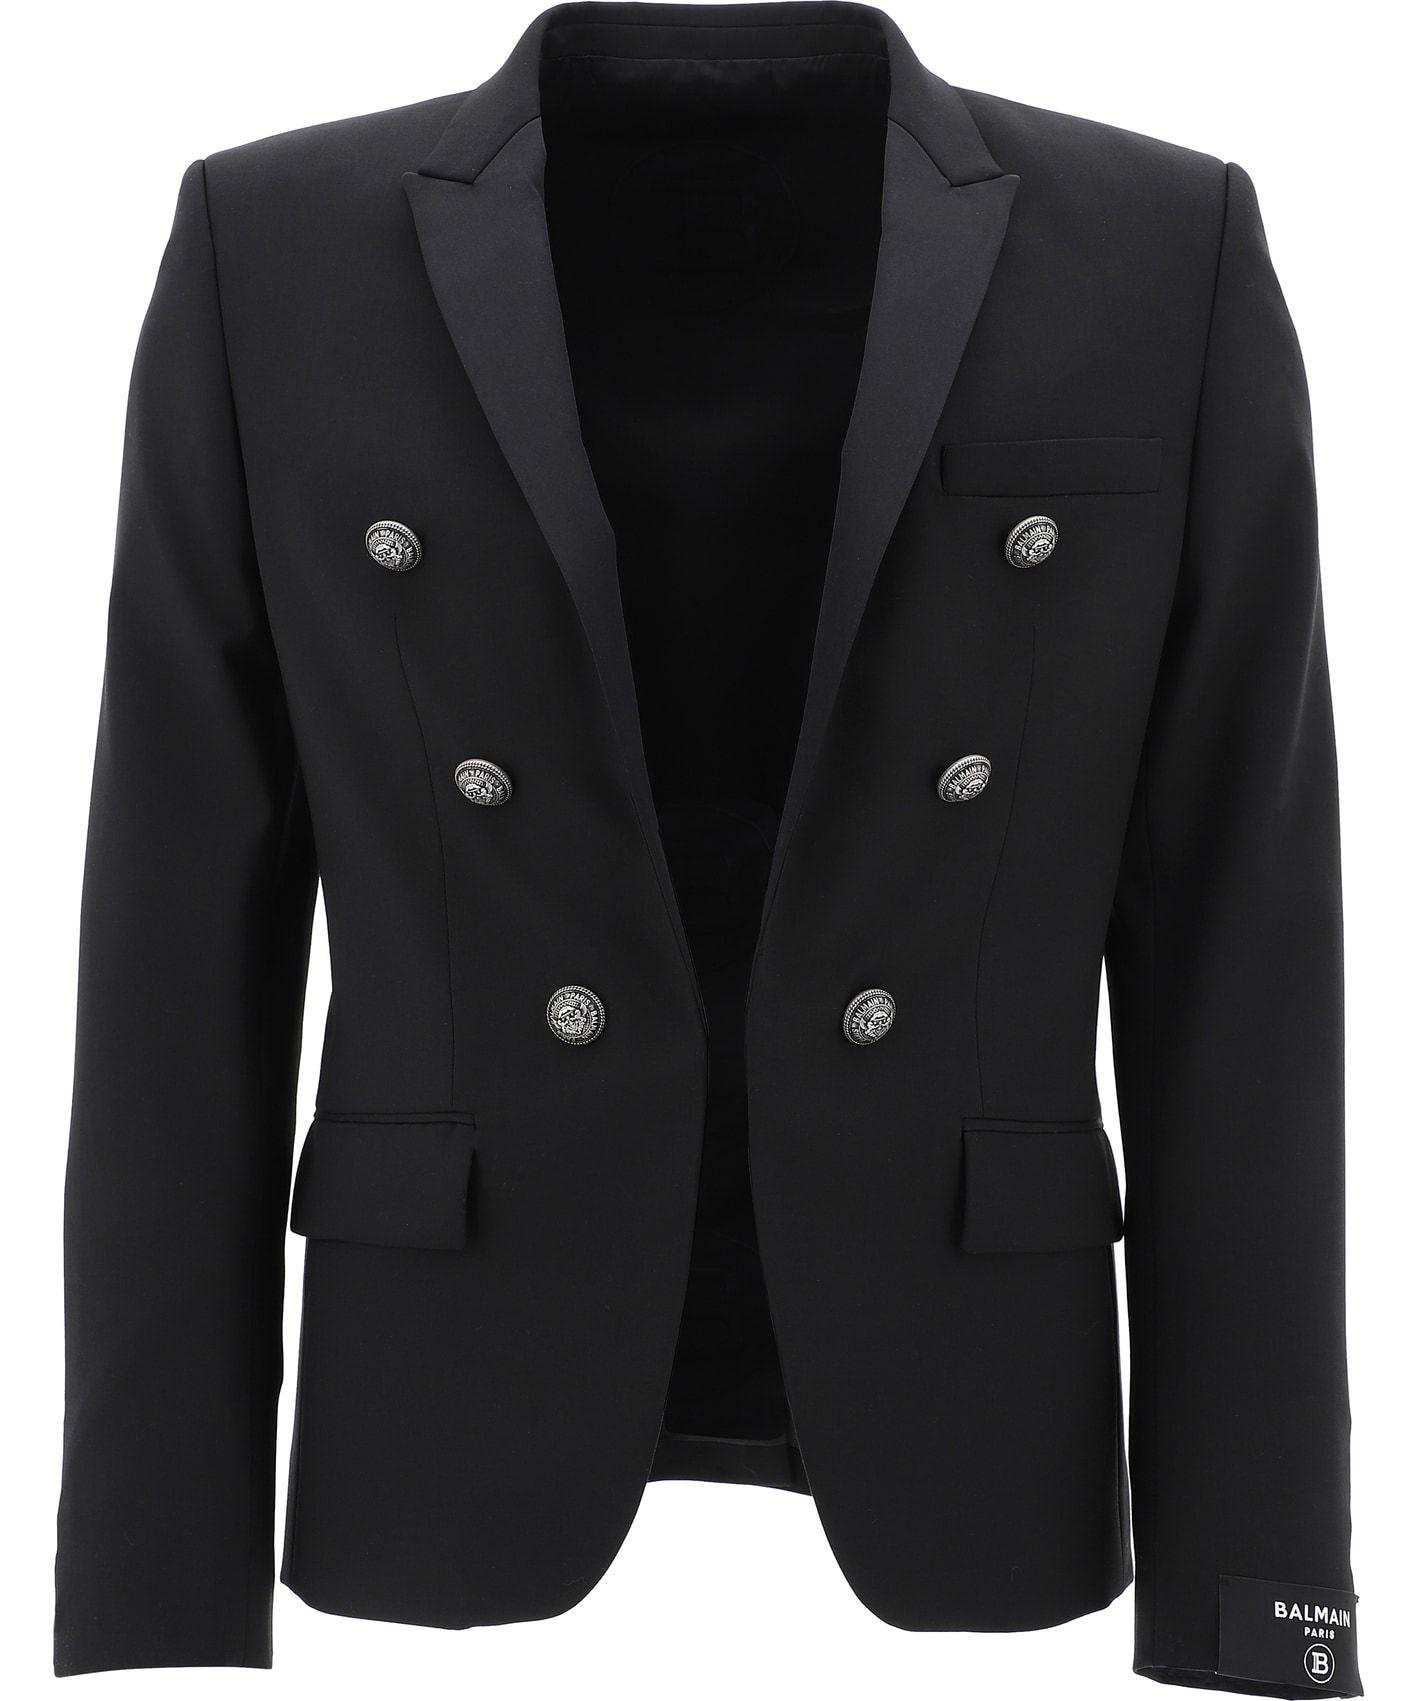 Balmain Wool Double-breasted Blazer in Black for Men - Lyst